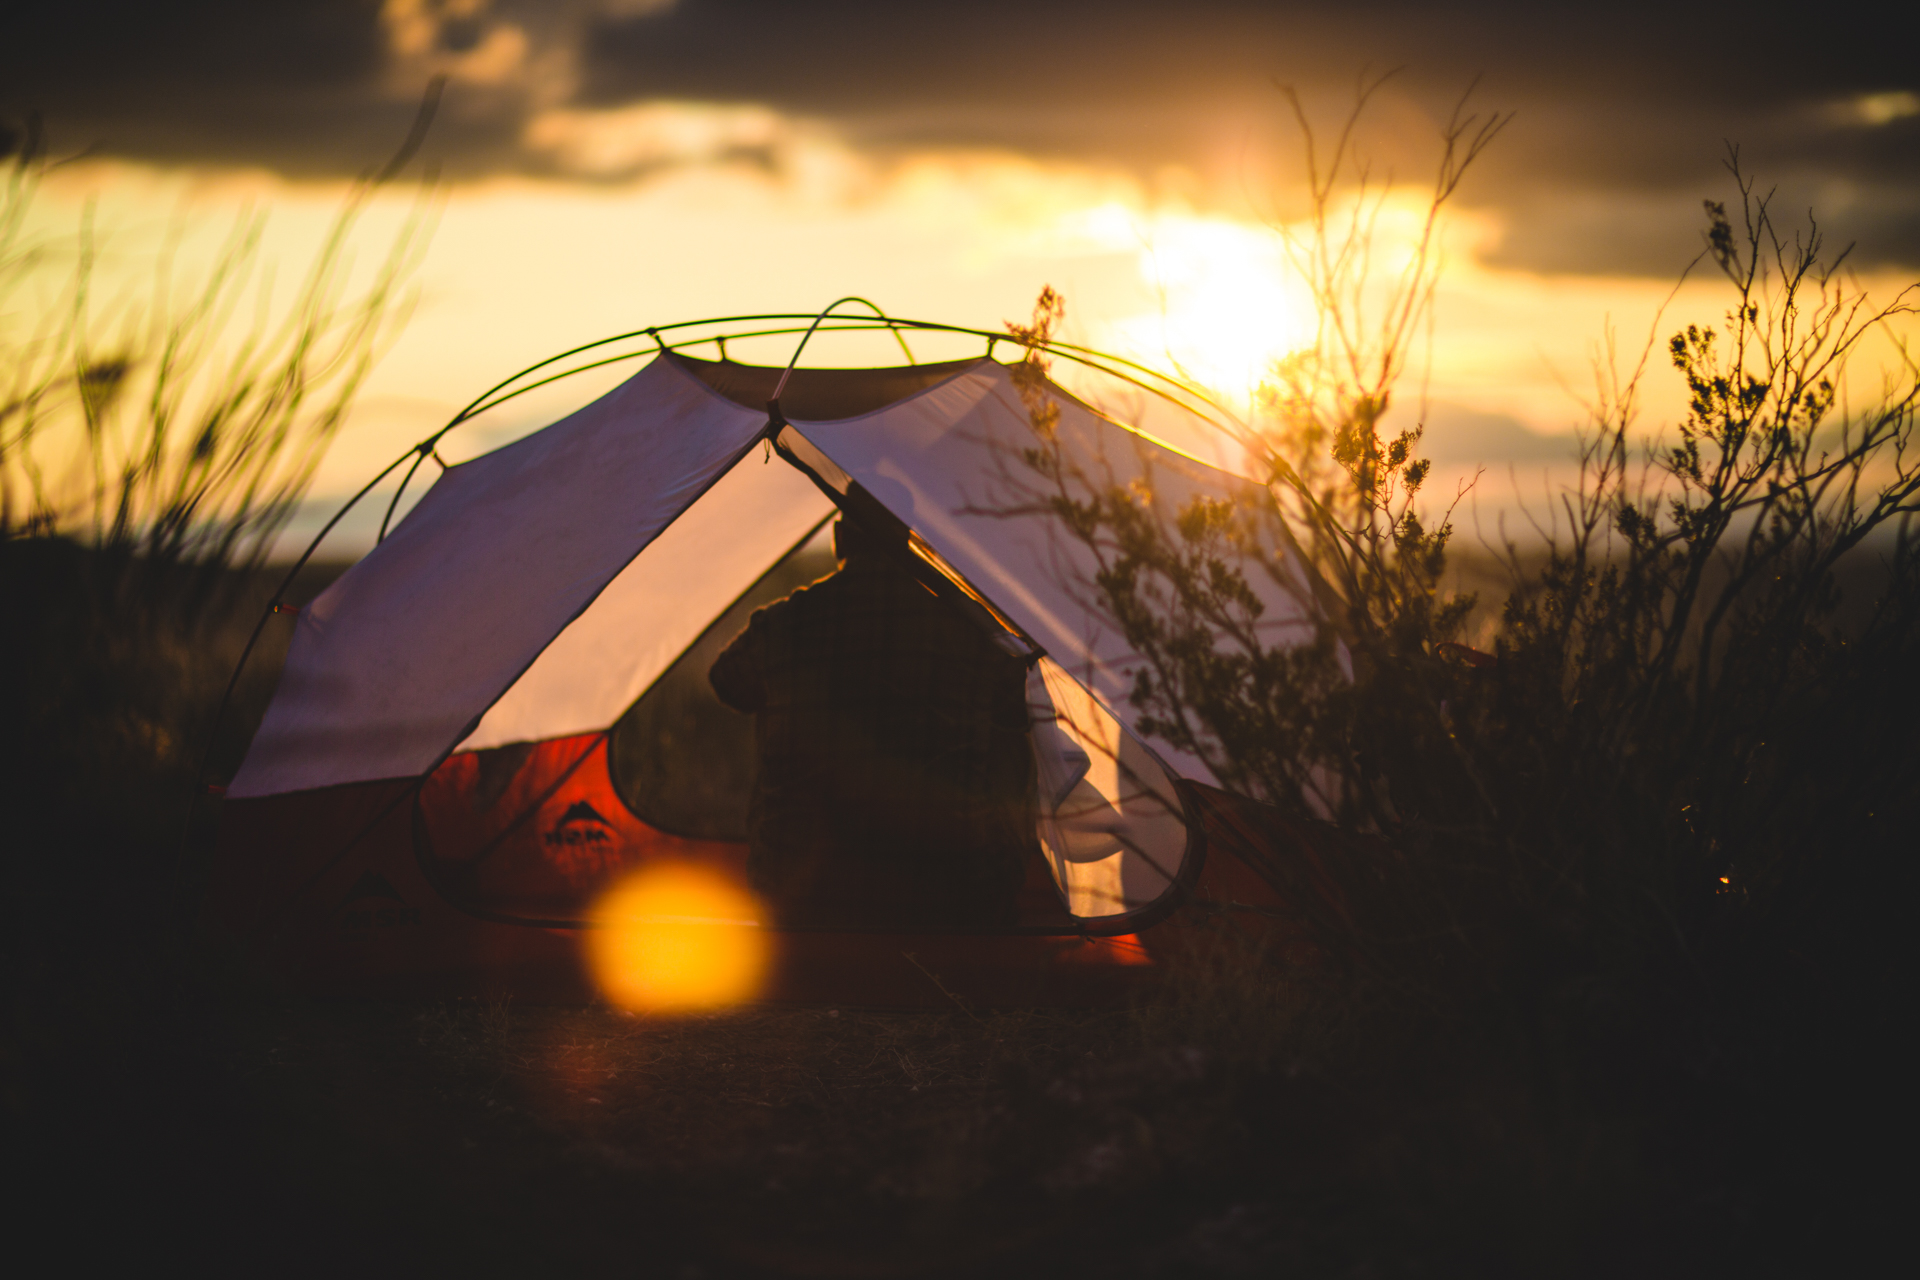 การ Camping คือการออกไปพักผ่อนในรูปแบบหนึ่ง